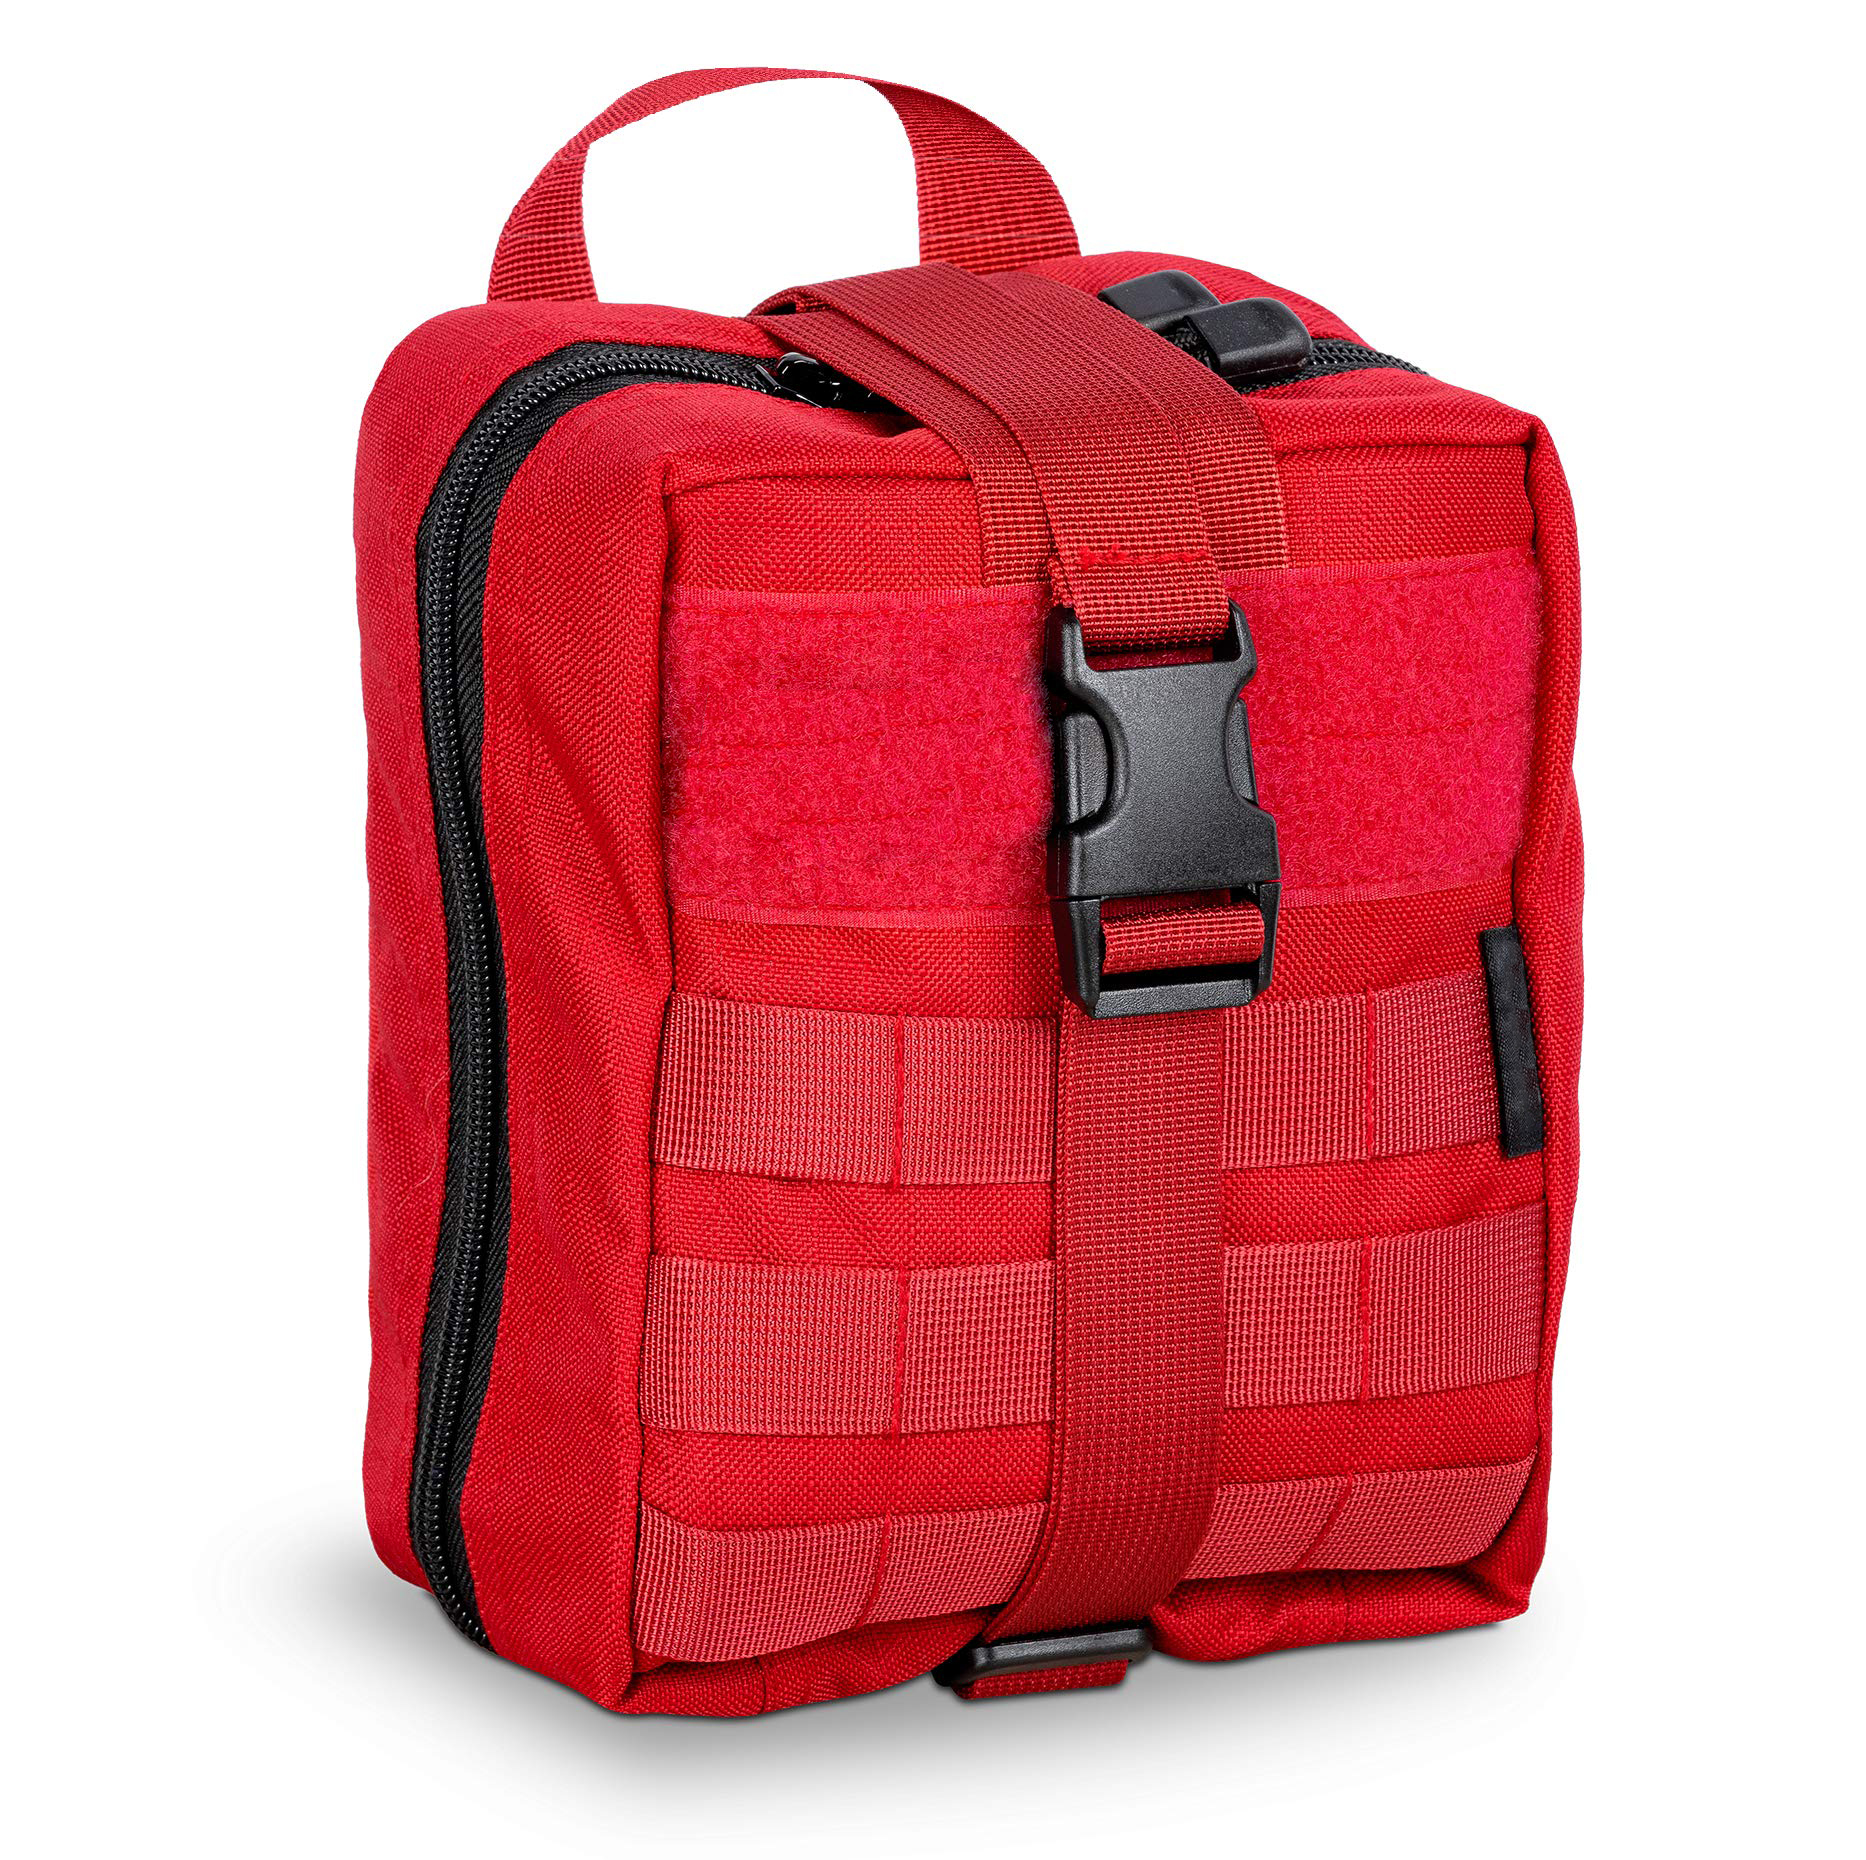 新しい耐久性と実用的な医療バッグは便利で大容量です